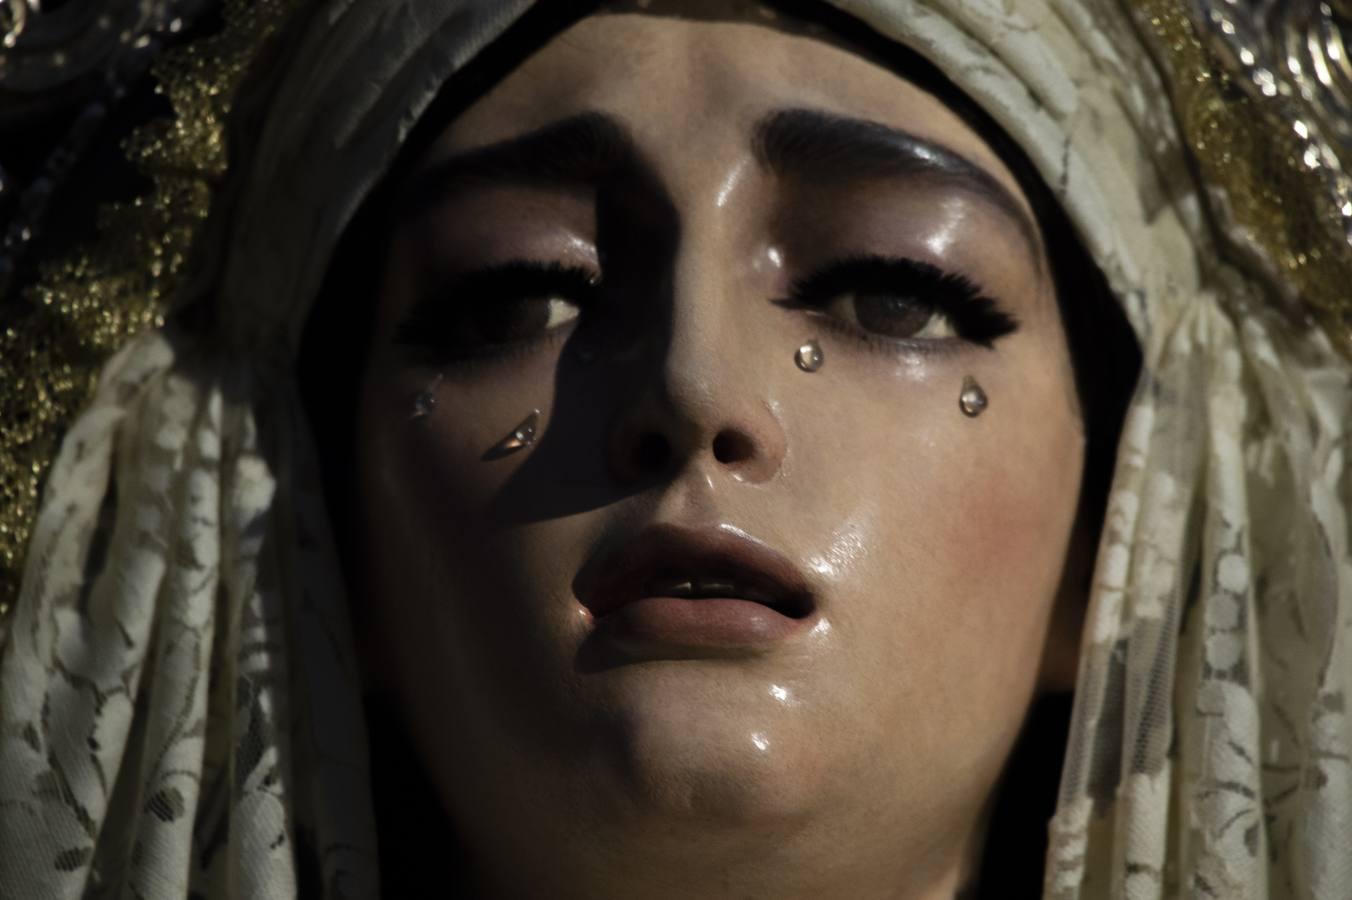 La Virgen de la Salud de San Gonzalo con San Juan Evangelista